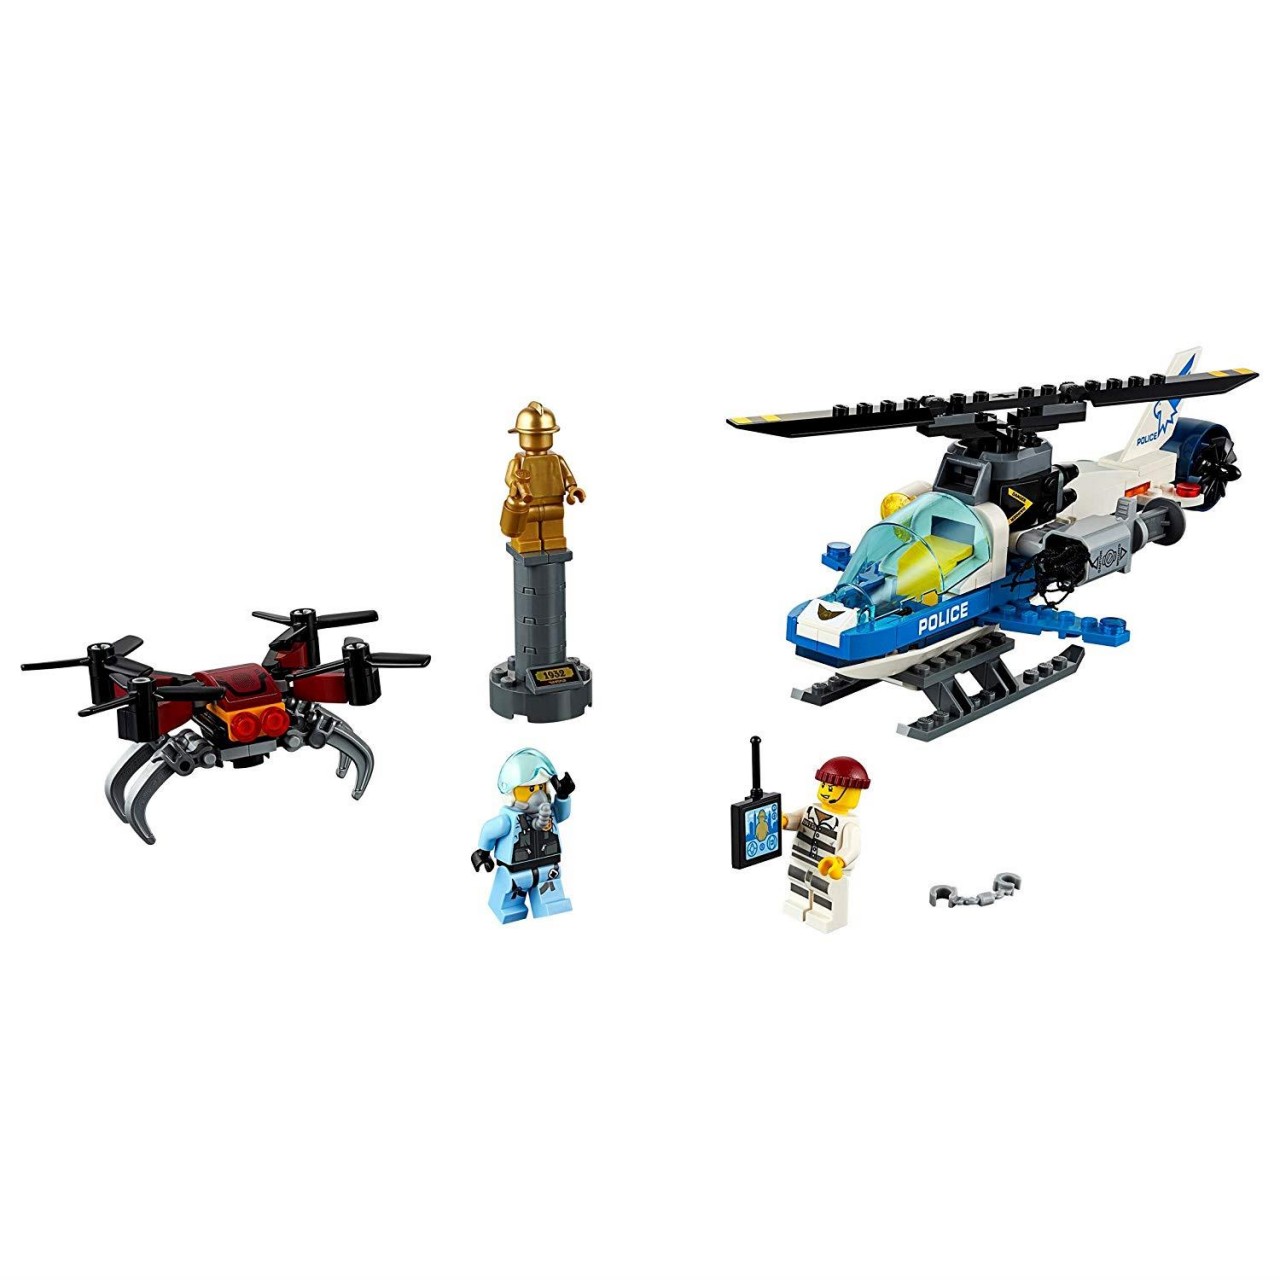 LEGO CITY 60207 Polizei Drohnenjagd